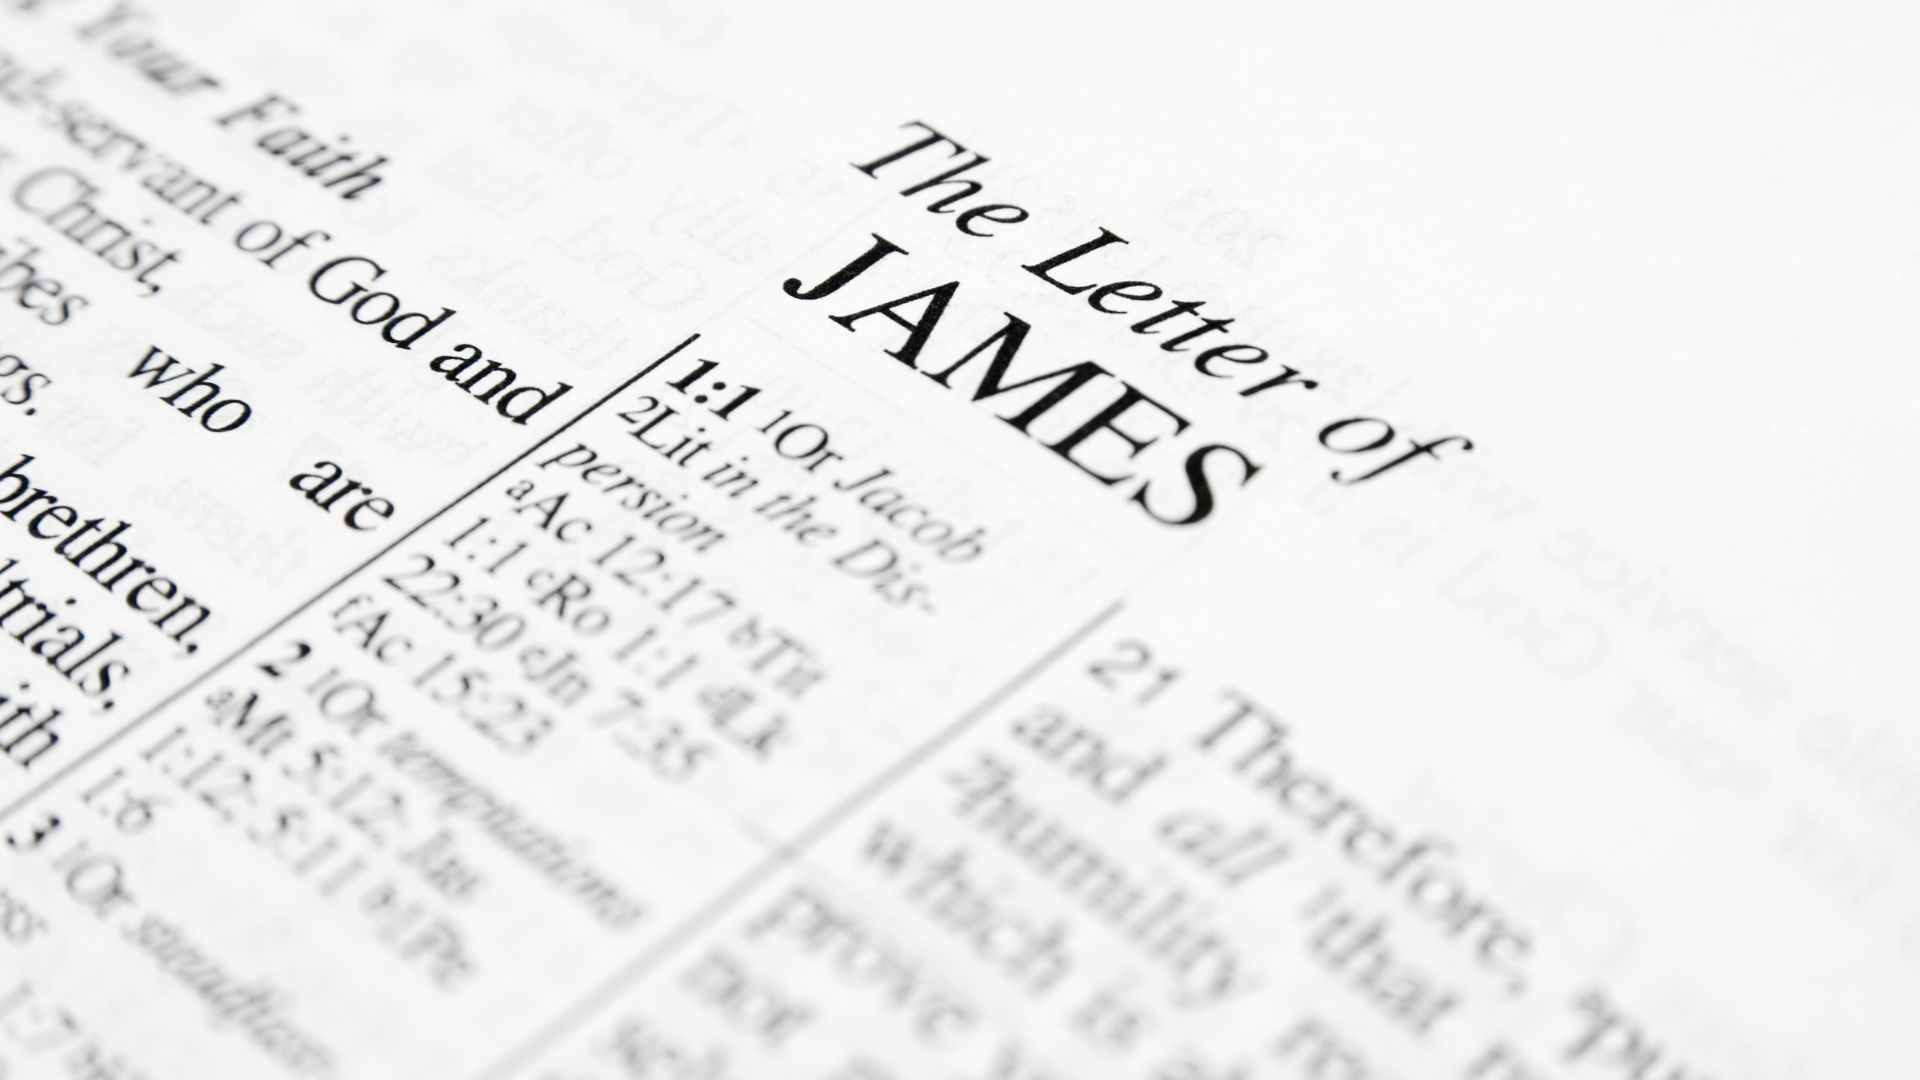 Bíblia aberta no livro de Tiago (escrito em inglês - The Letter of james)